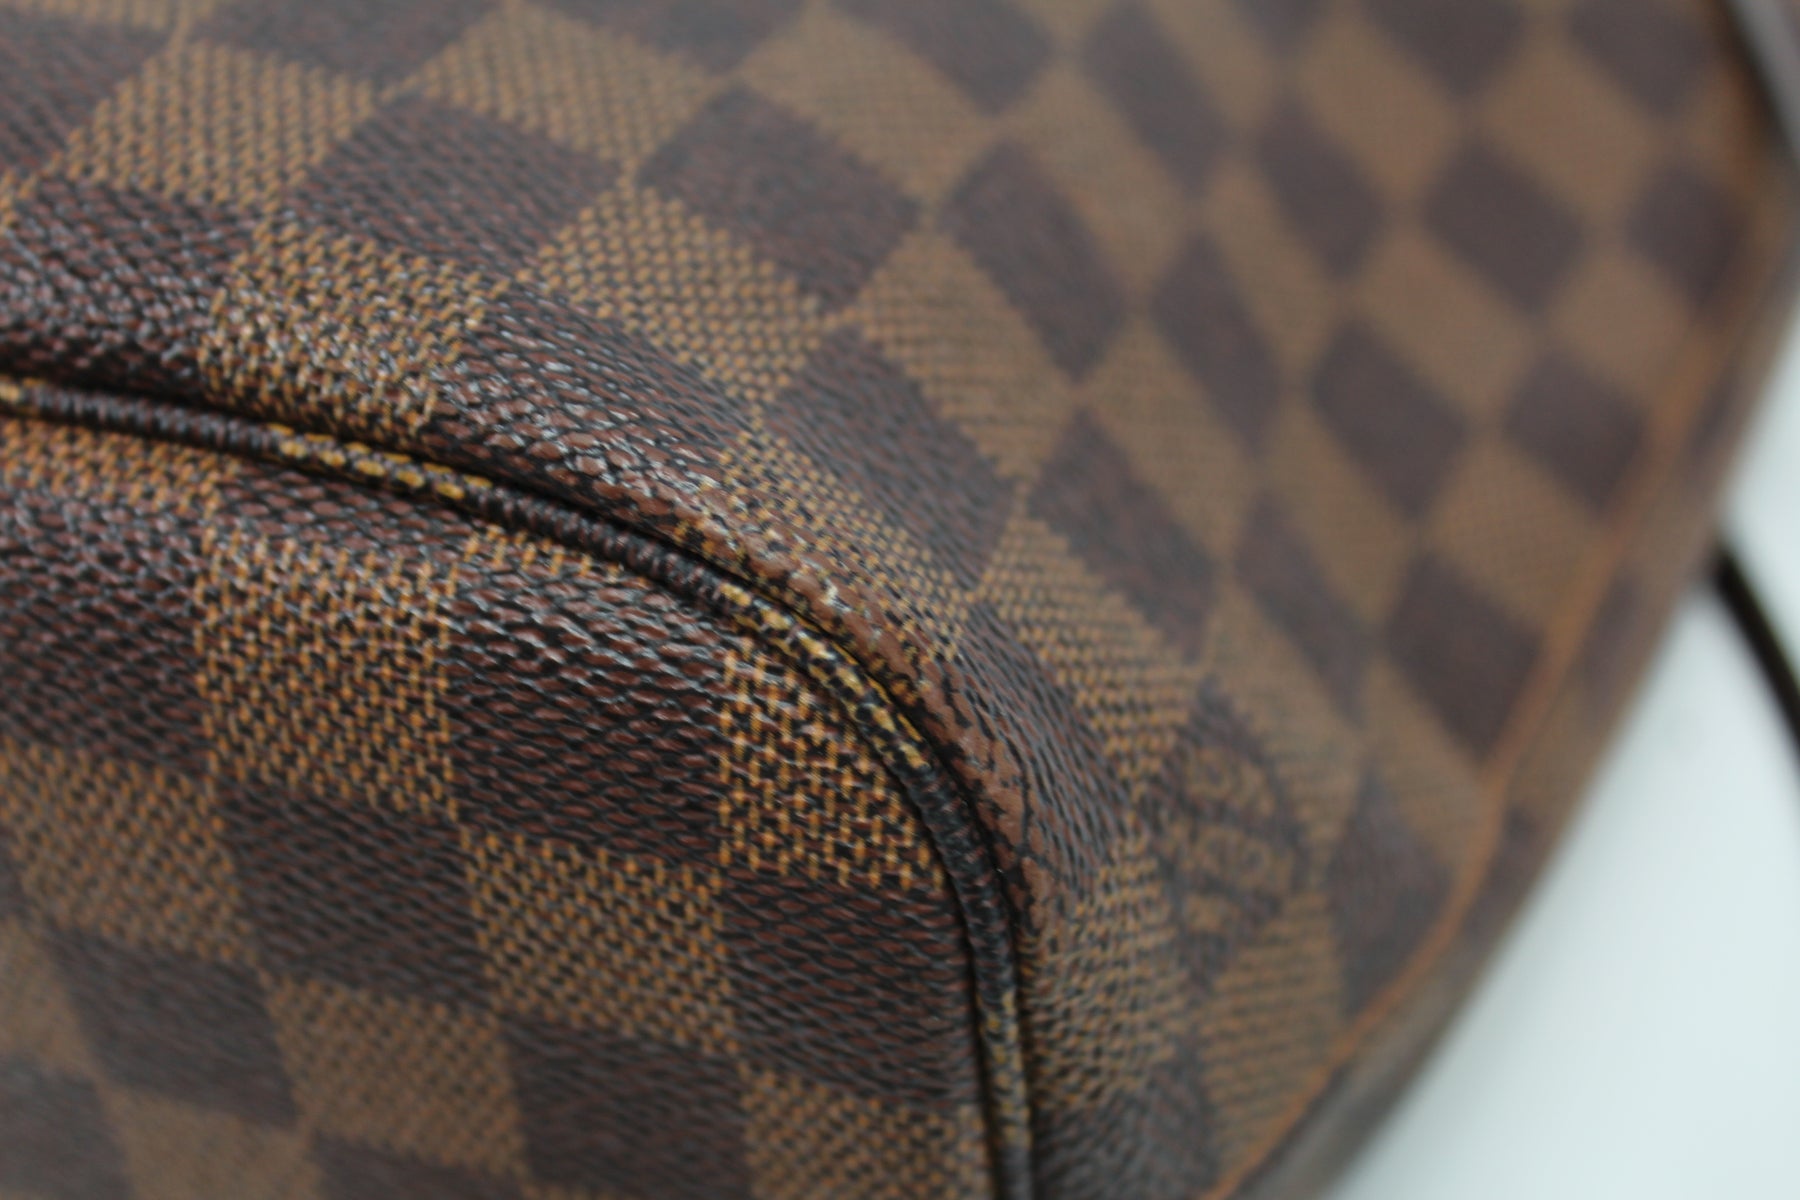 Pochette Only Neverfull PM Damier Ebene – Keeks Designer Handbags